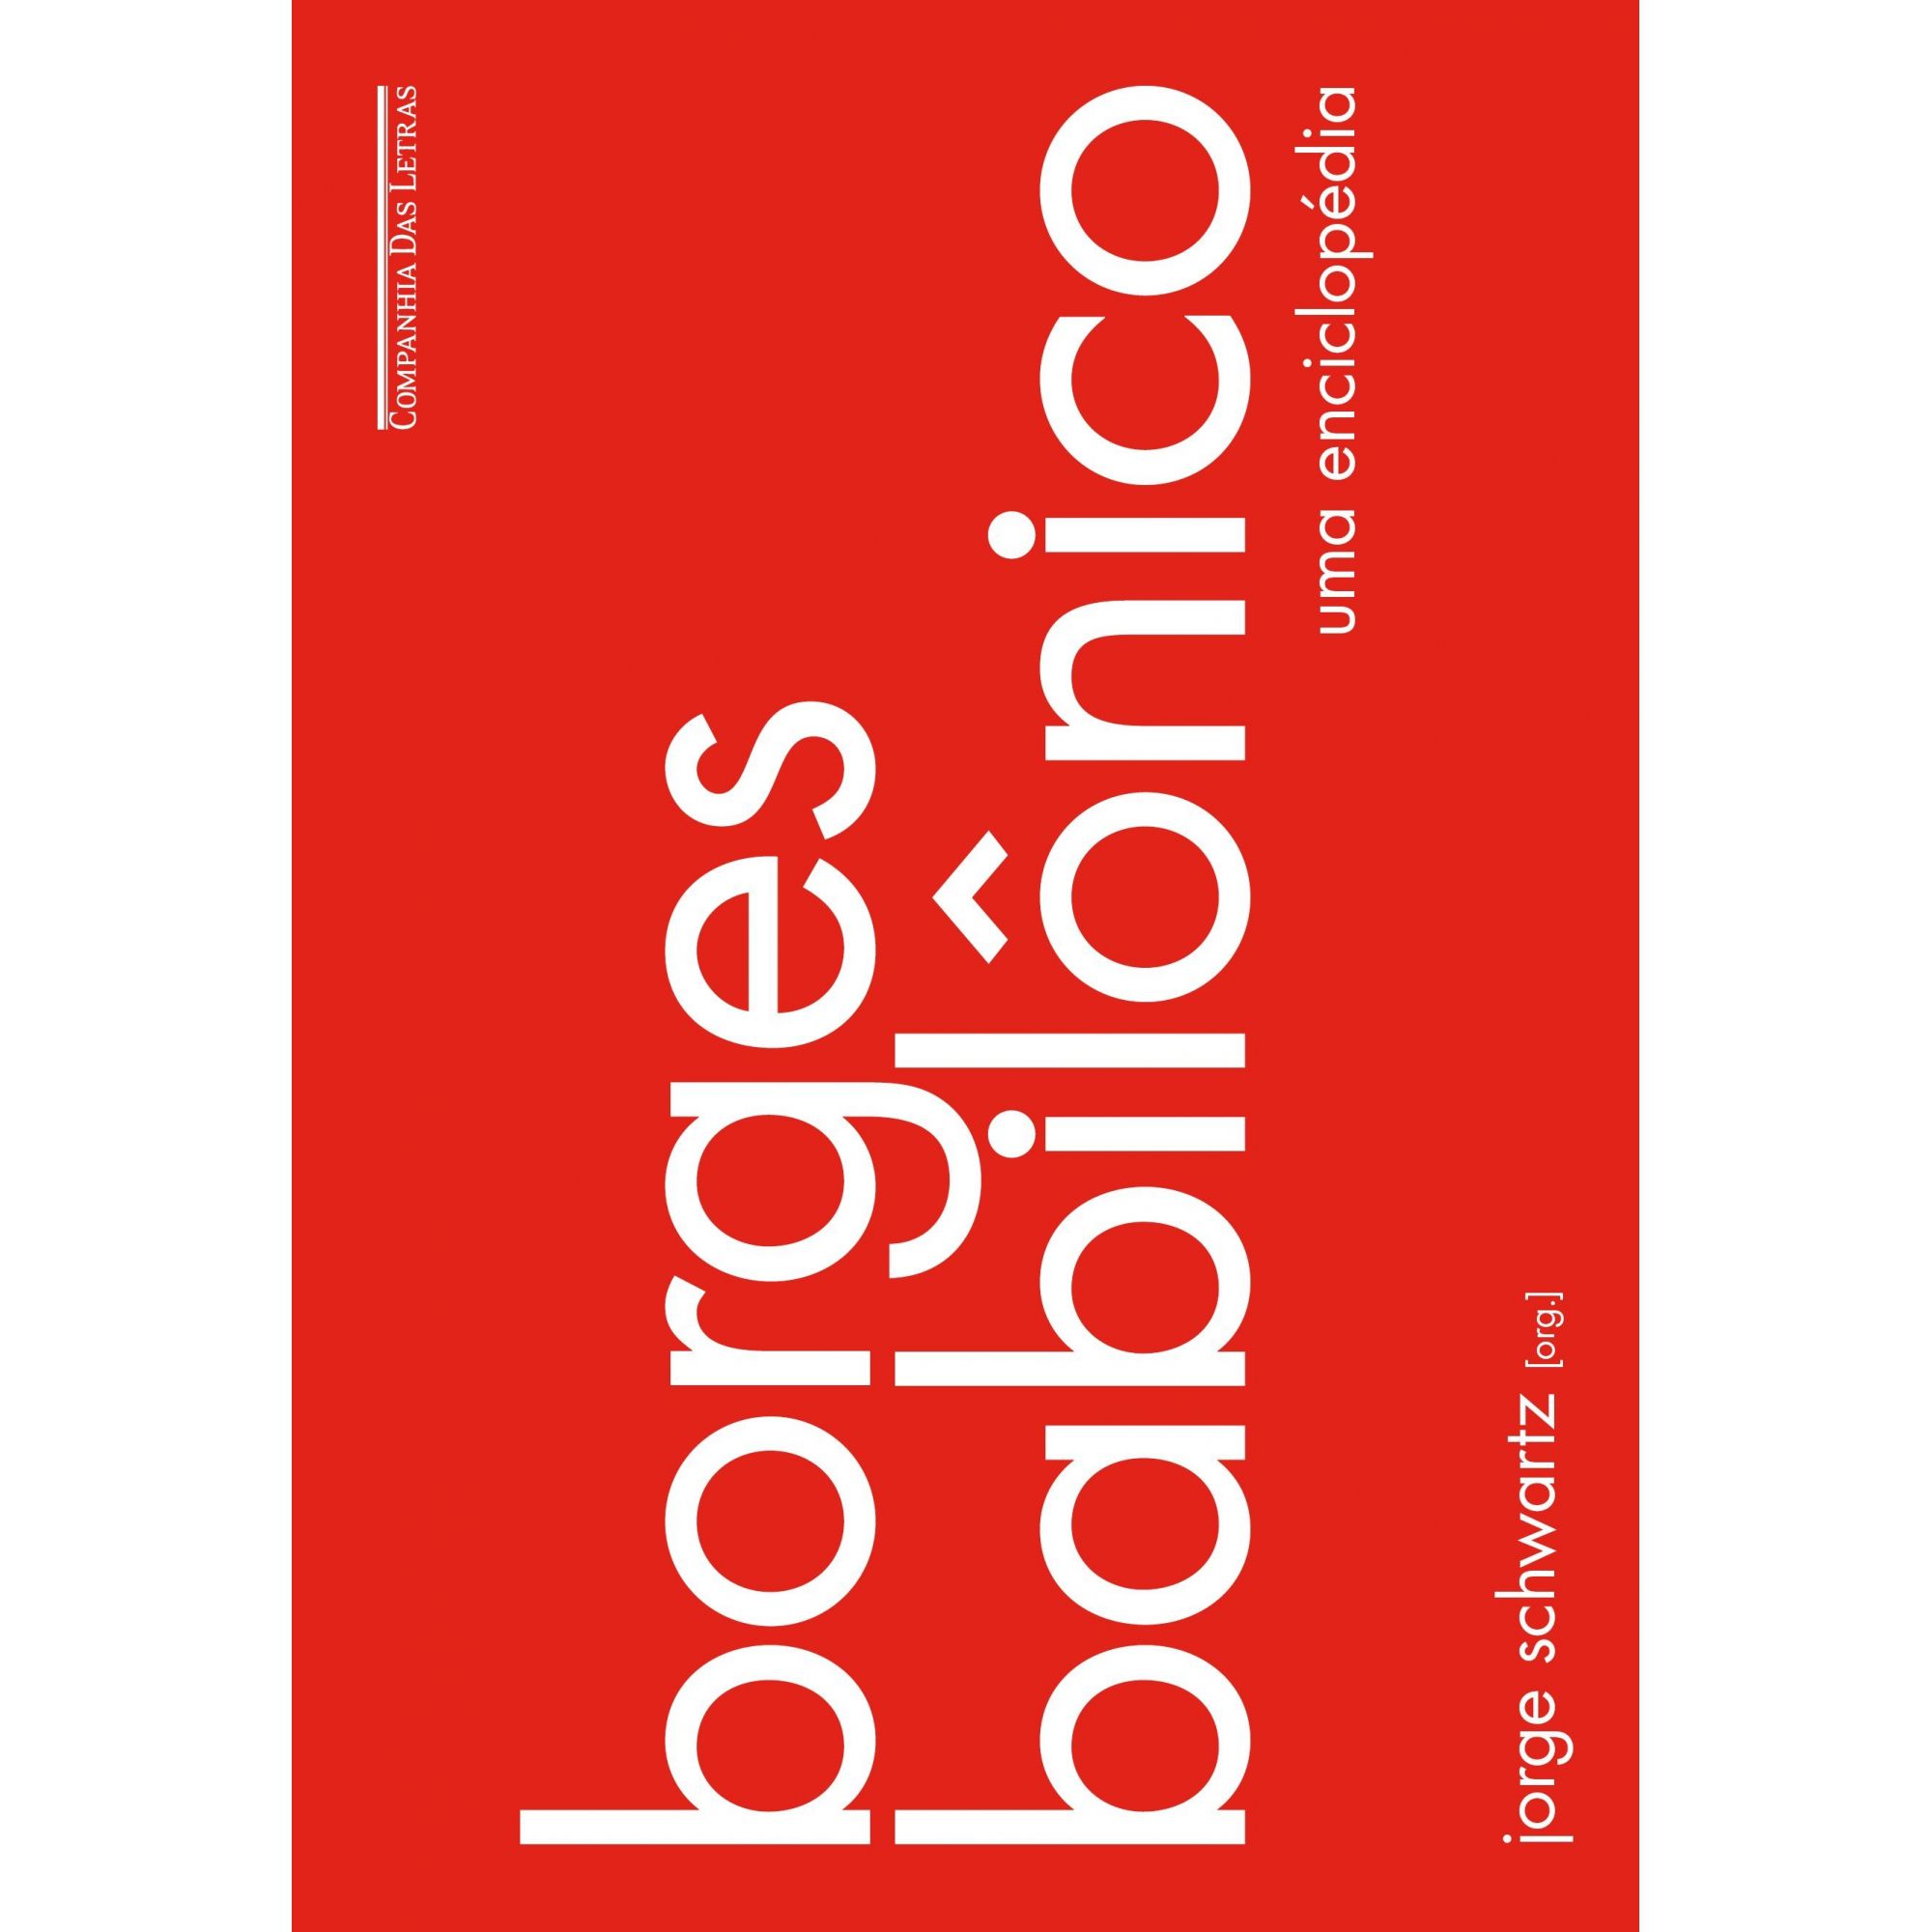 Borges Babilônico - Uma enciclopédia